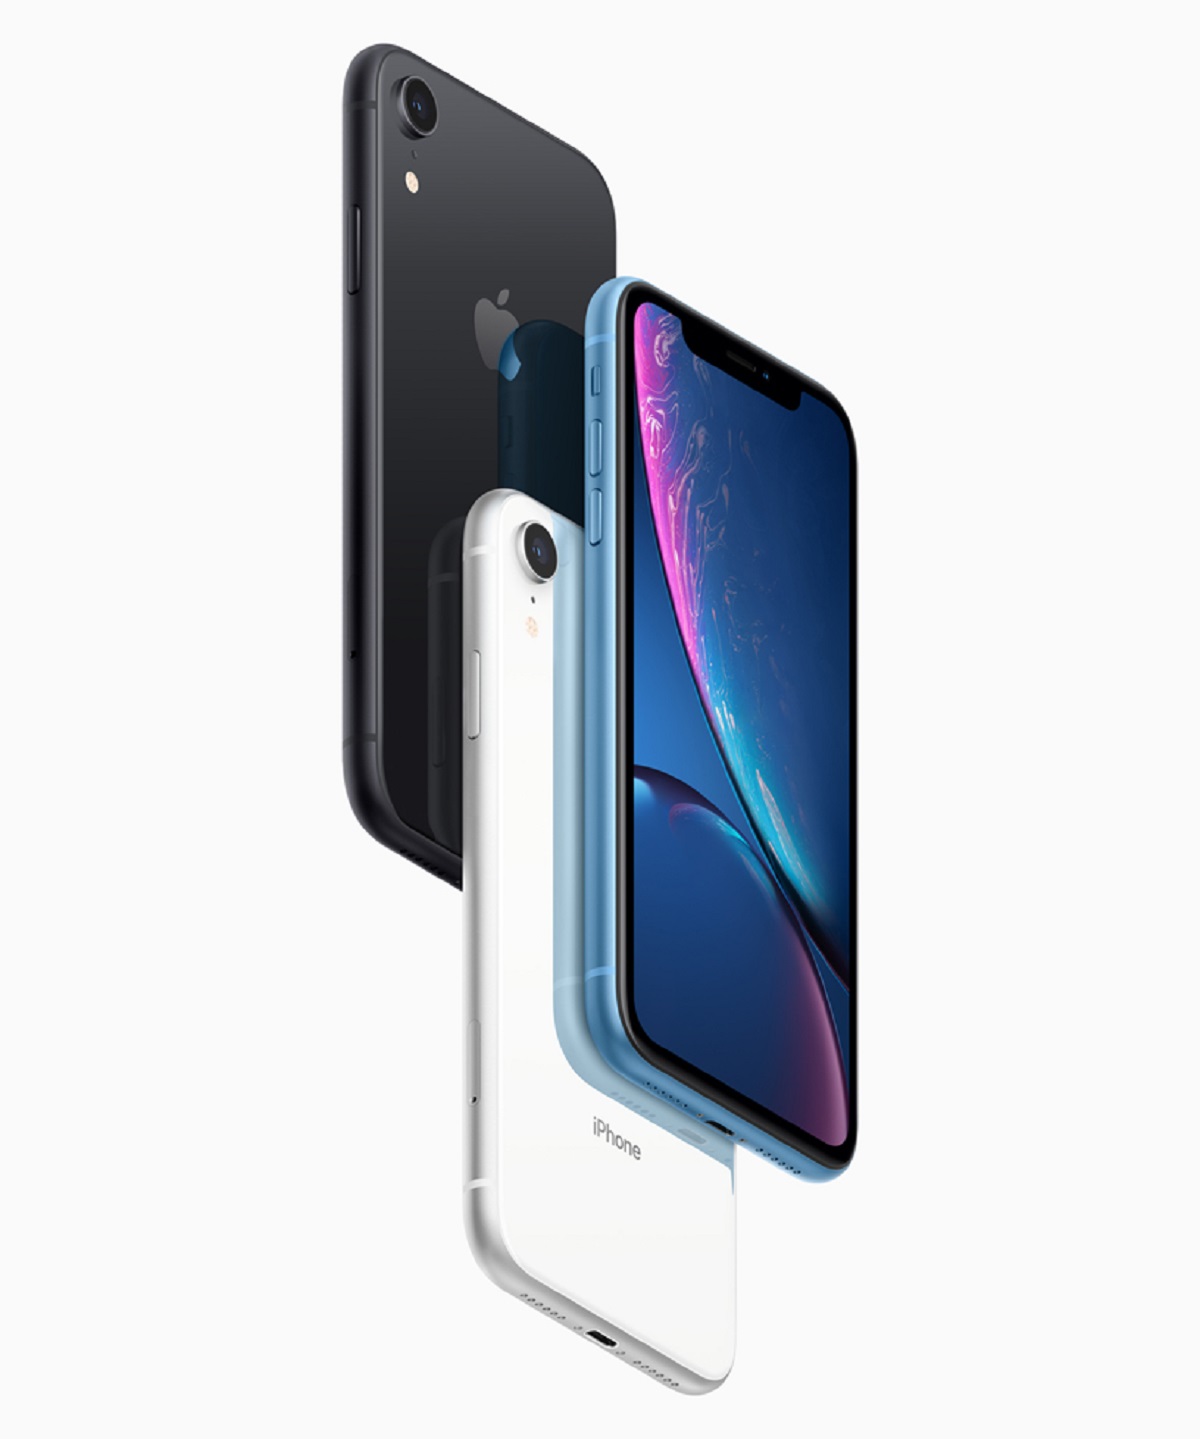 Spesifikasi dan Harga Apple iPhone XR di Indonesia Saat Ini, Apakah Masih Worth it Untuk Memilikinya?